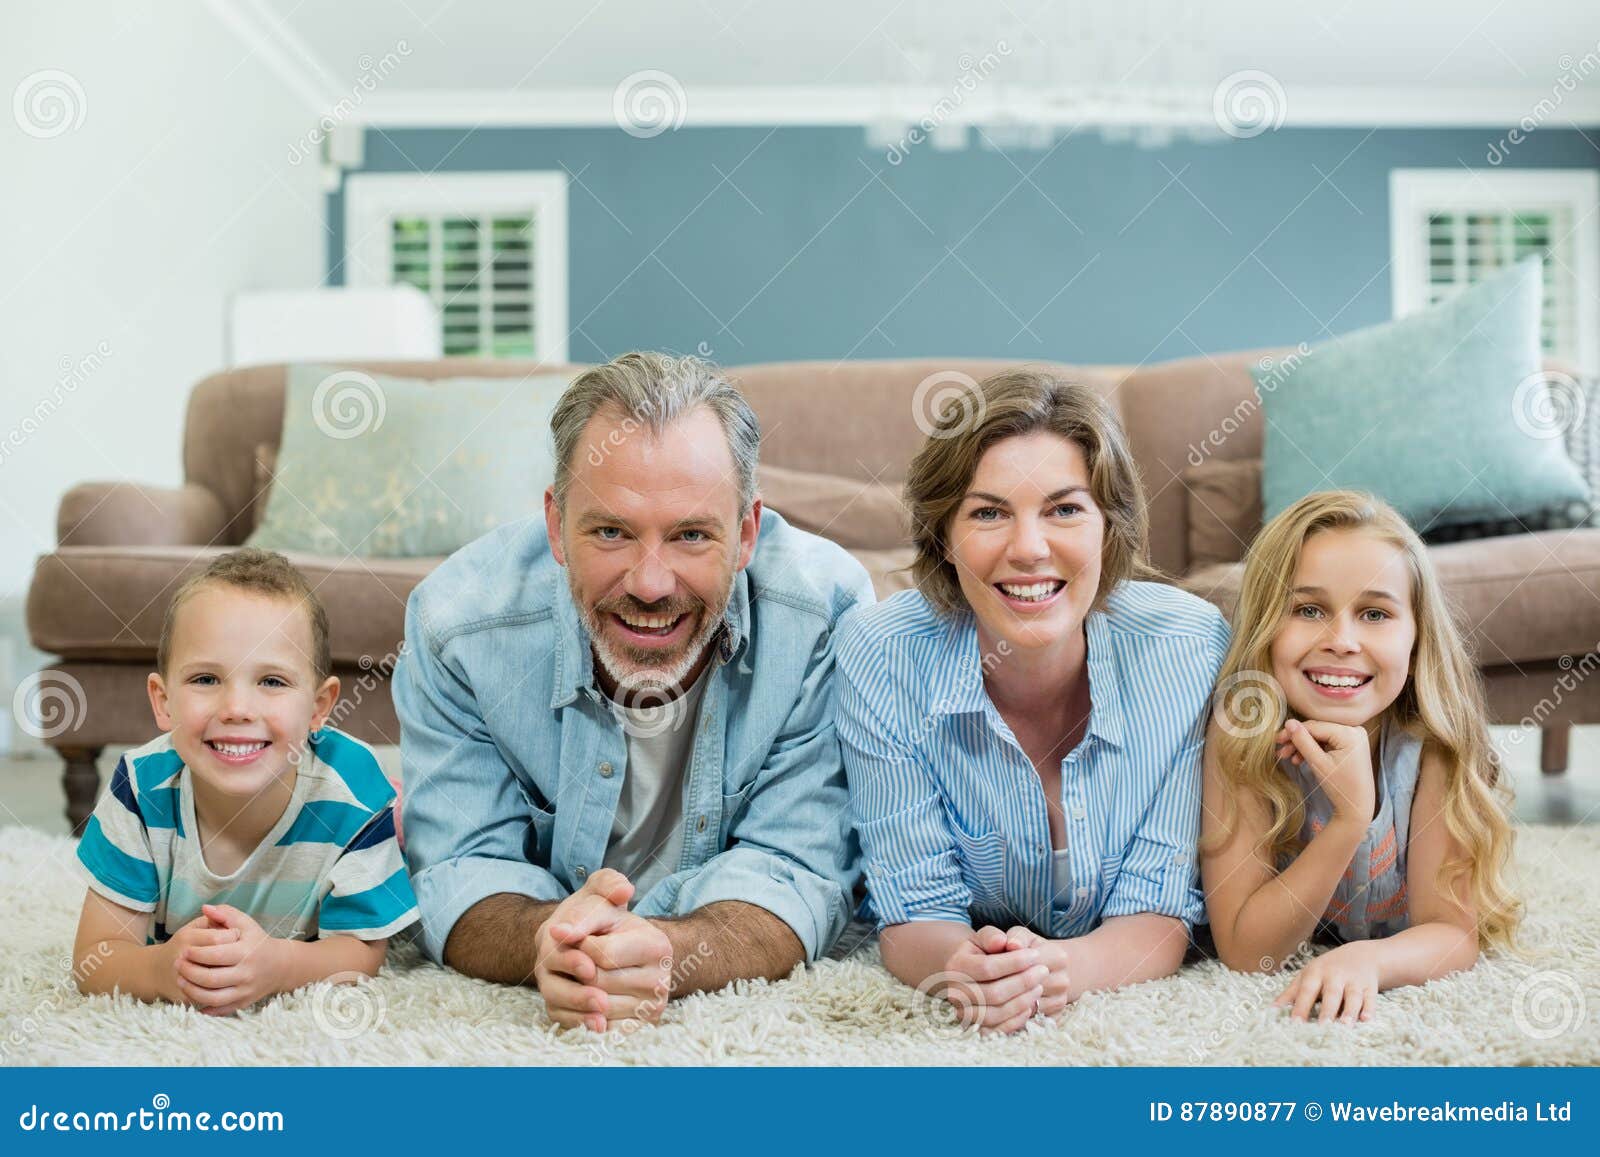 family lying in living room